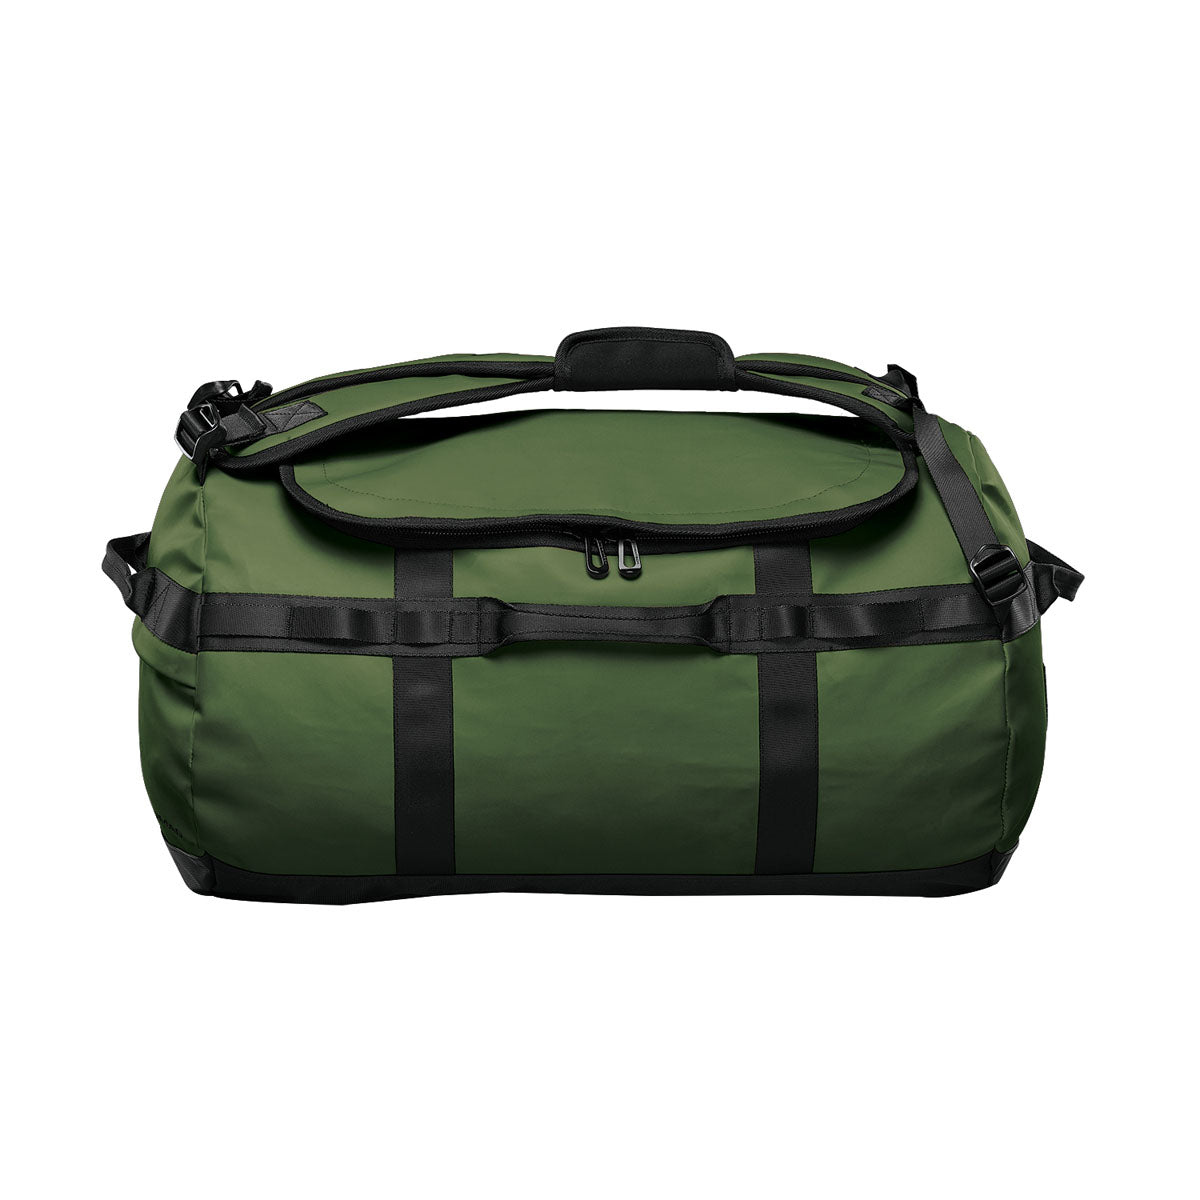 Nomad Design Splash Bag - Large